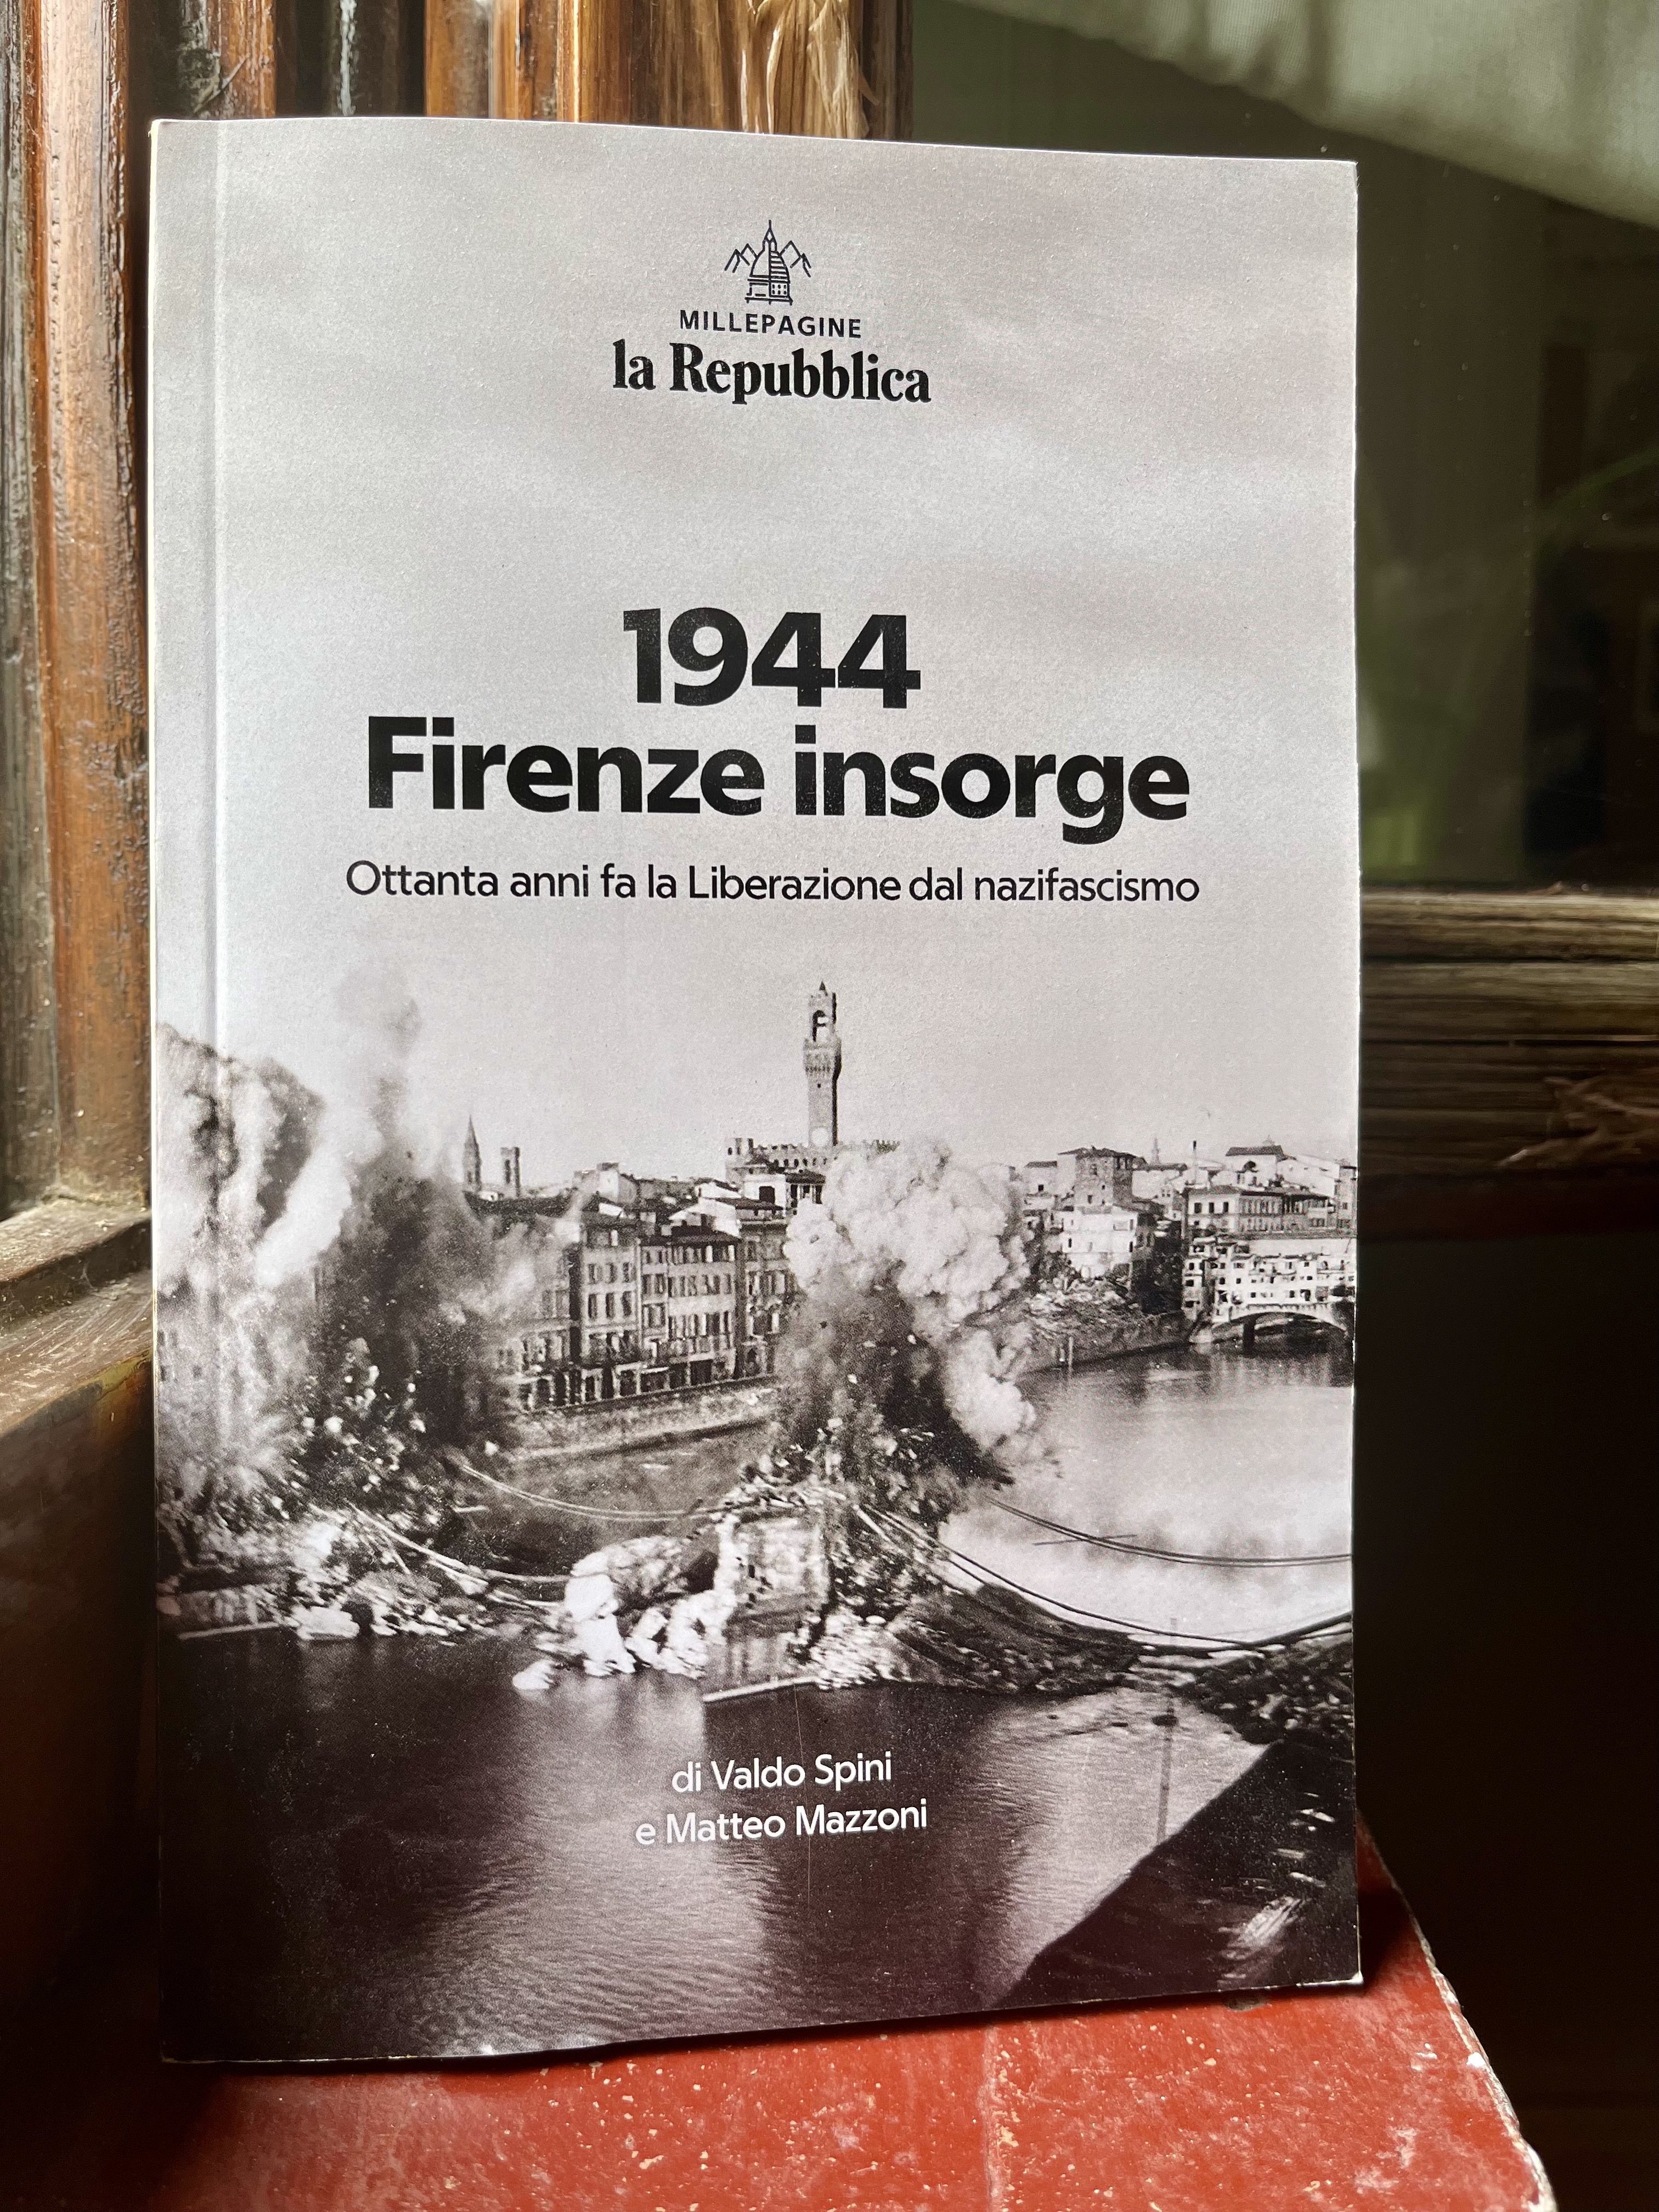 Giovedì 20 giugno a palazzo Strozzi Sacrati l’anteprima del volume “1944 Firenze insorge”